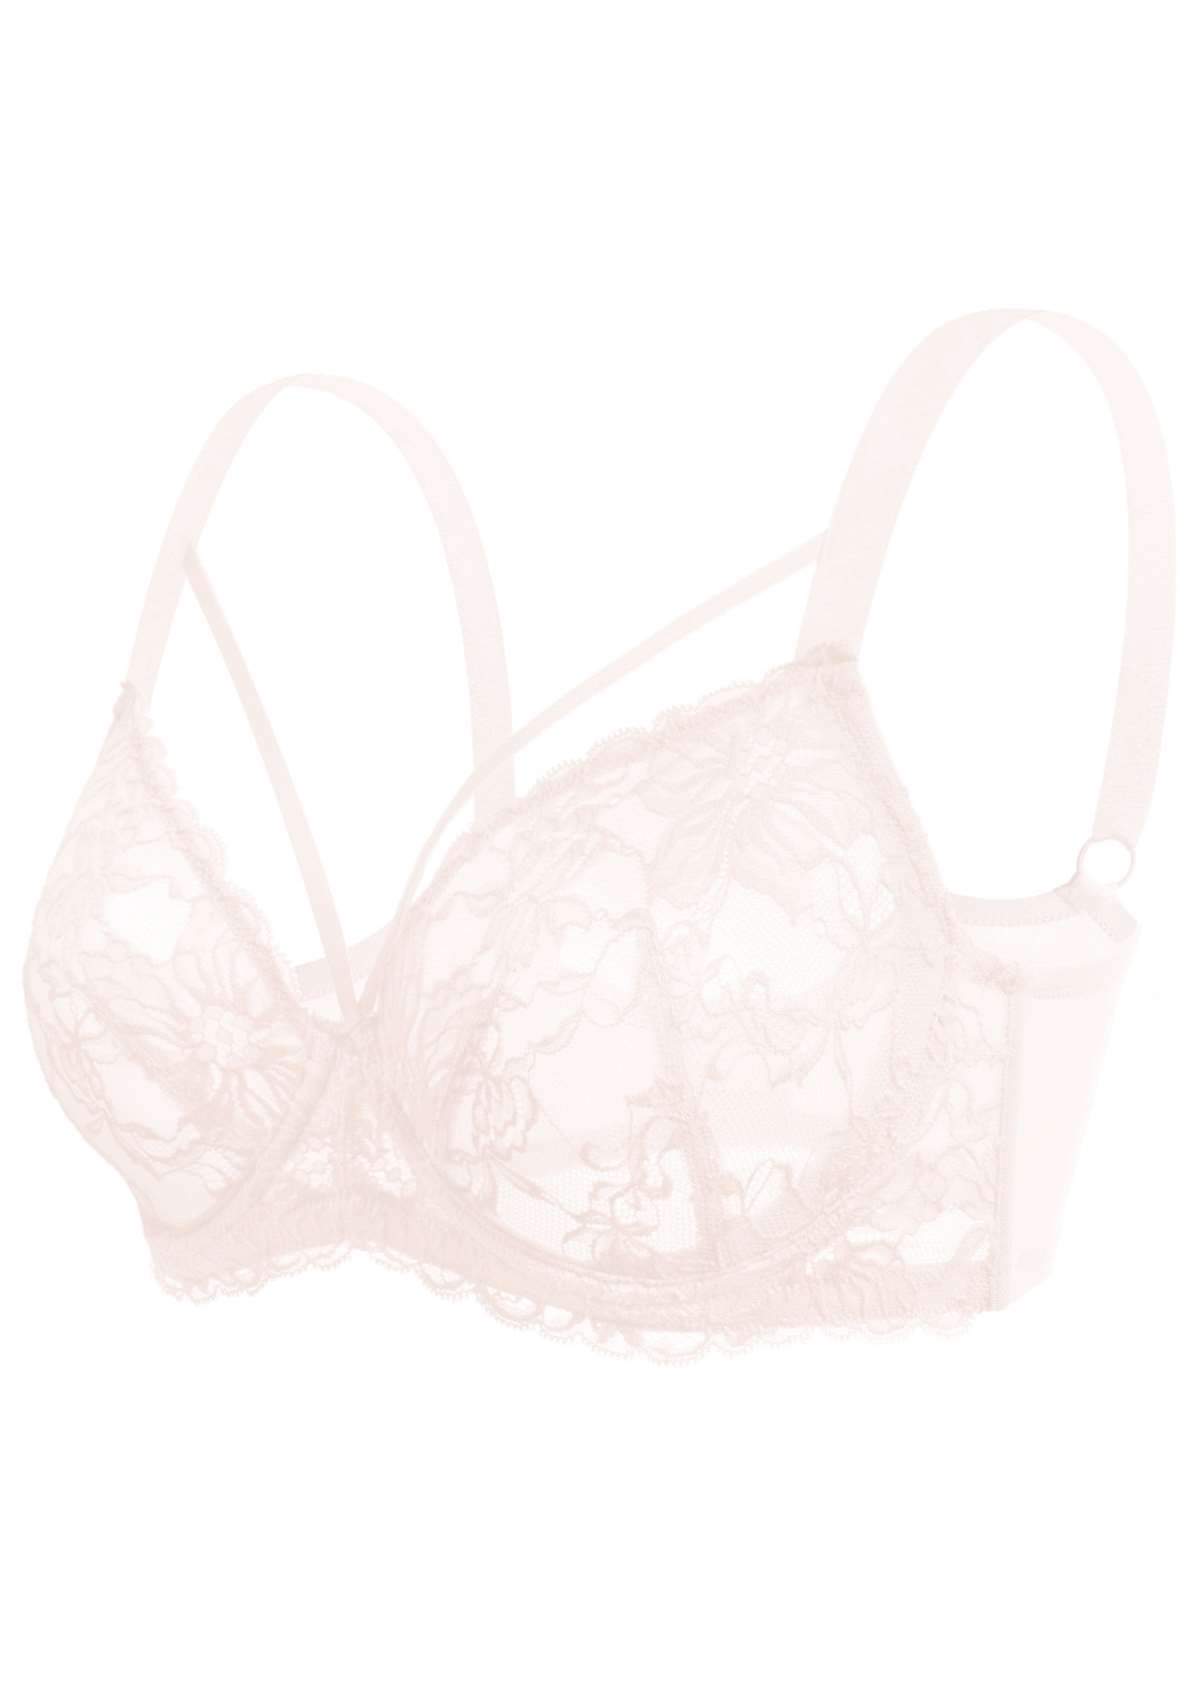 HSIA Pretty In Petals Underwire Lace Bra: No Padding, Full Cup Bra - Dusty Peach / 34 / C